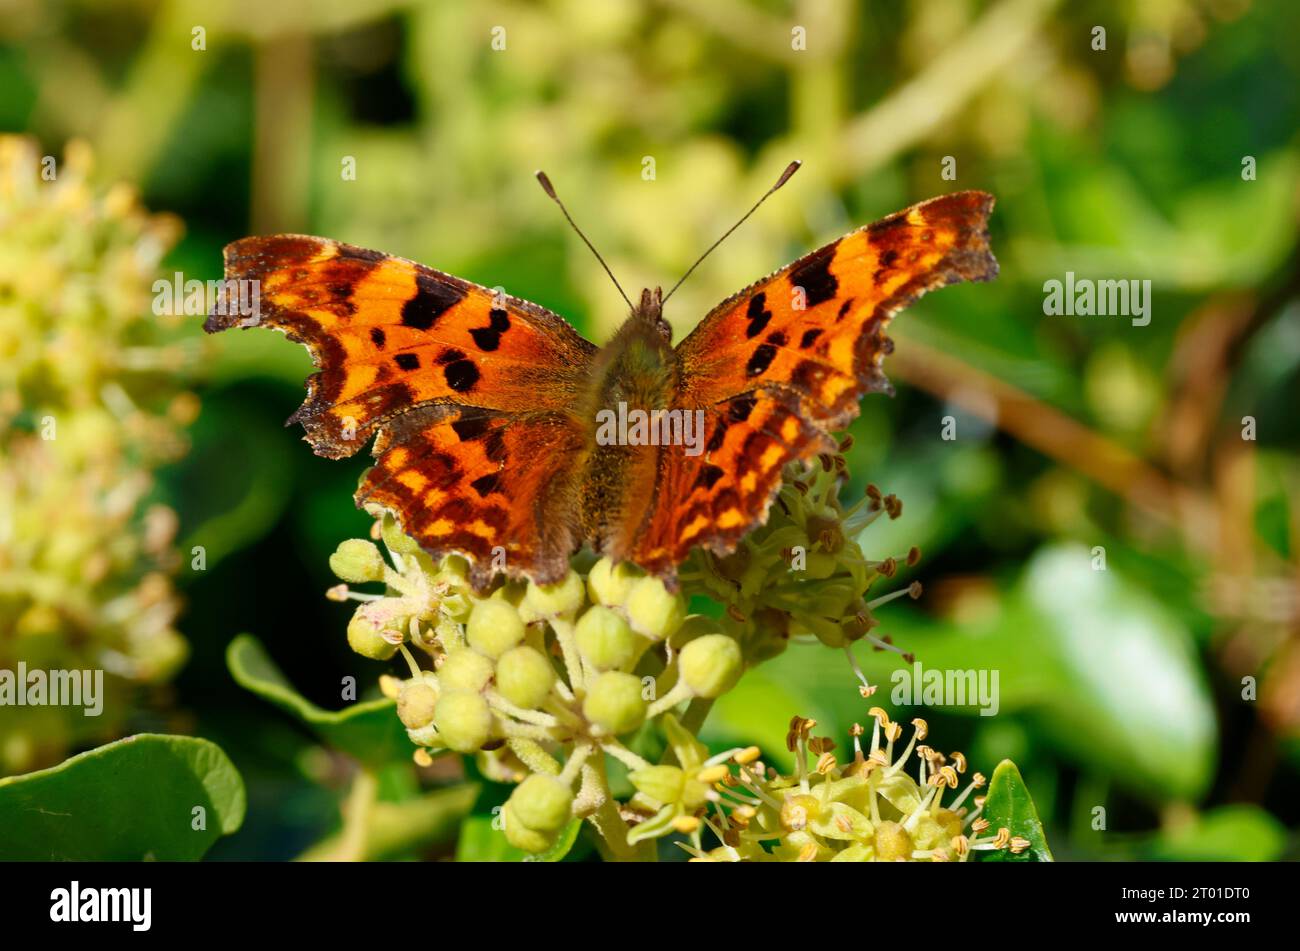 La coma es una mariposa común en el sur del Reino Unido. Los adultos hibernan durante el invierno y a menudo se les ve en los jardines bebiendo néctar de flores. Foto de stock